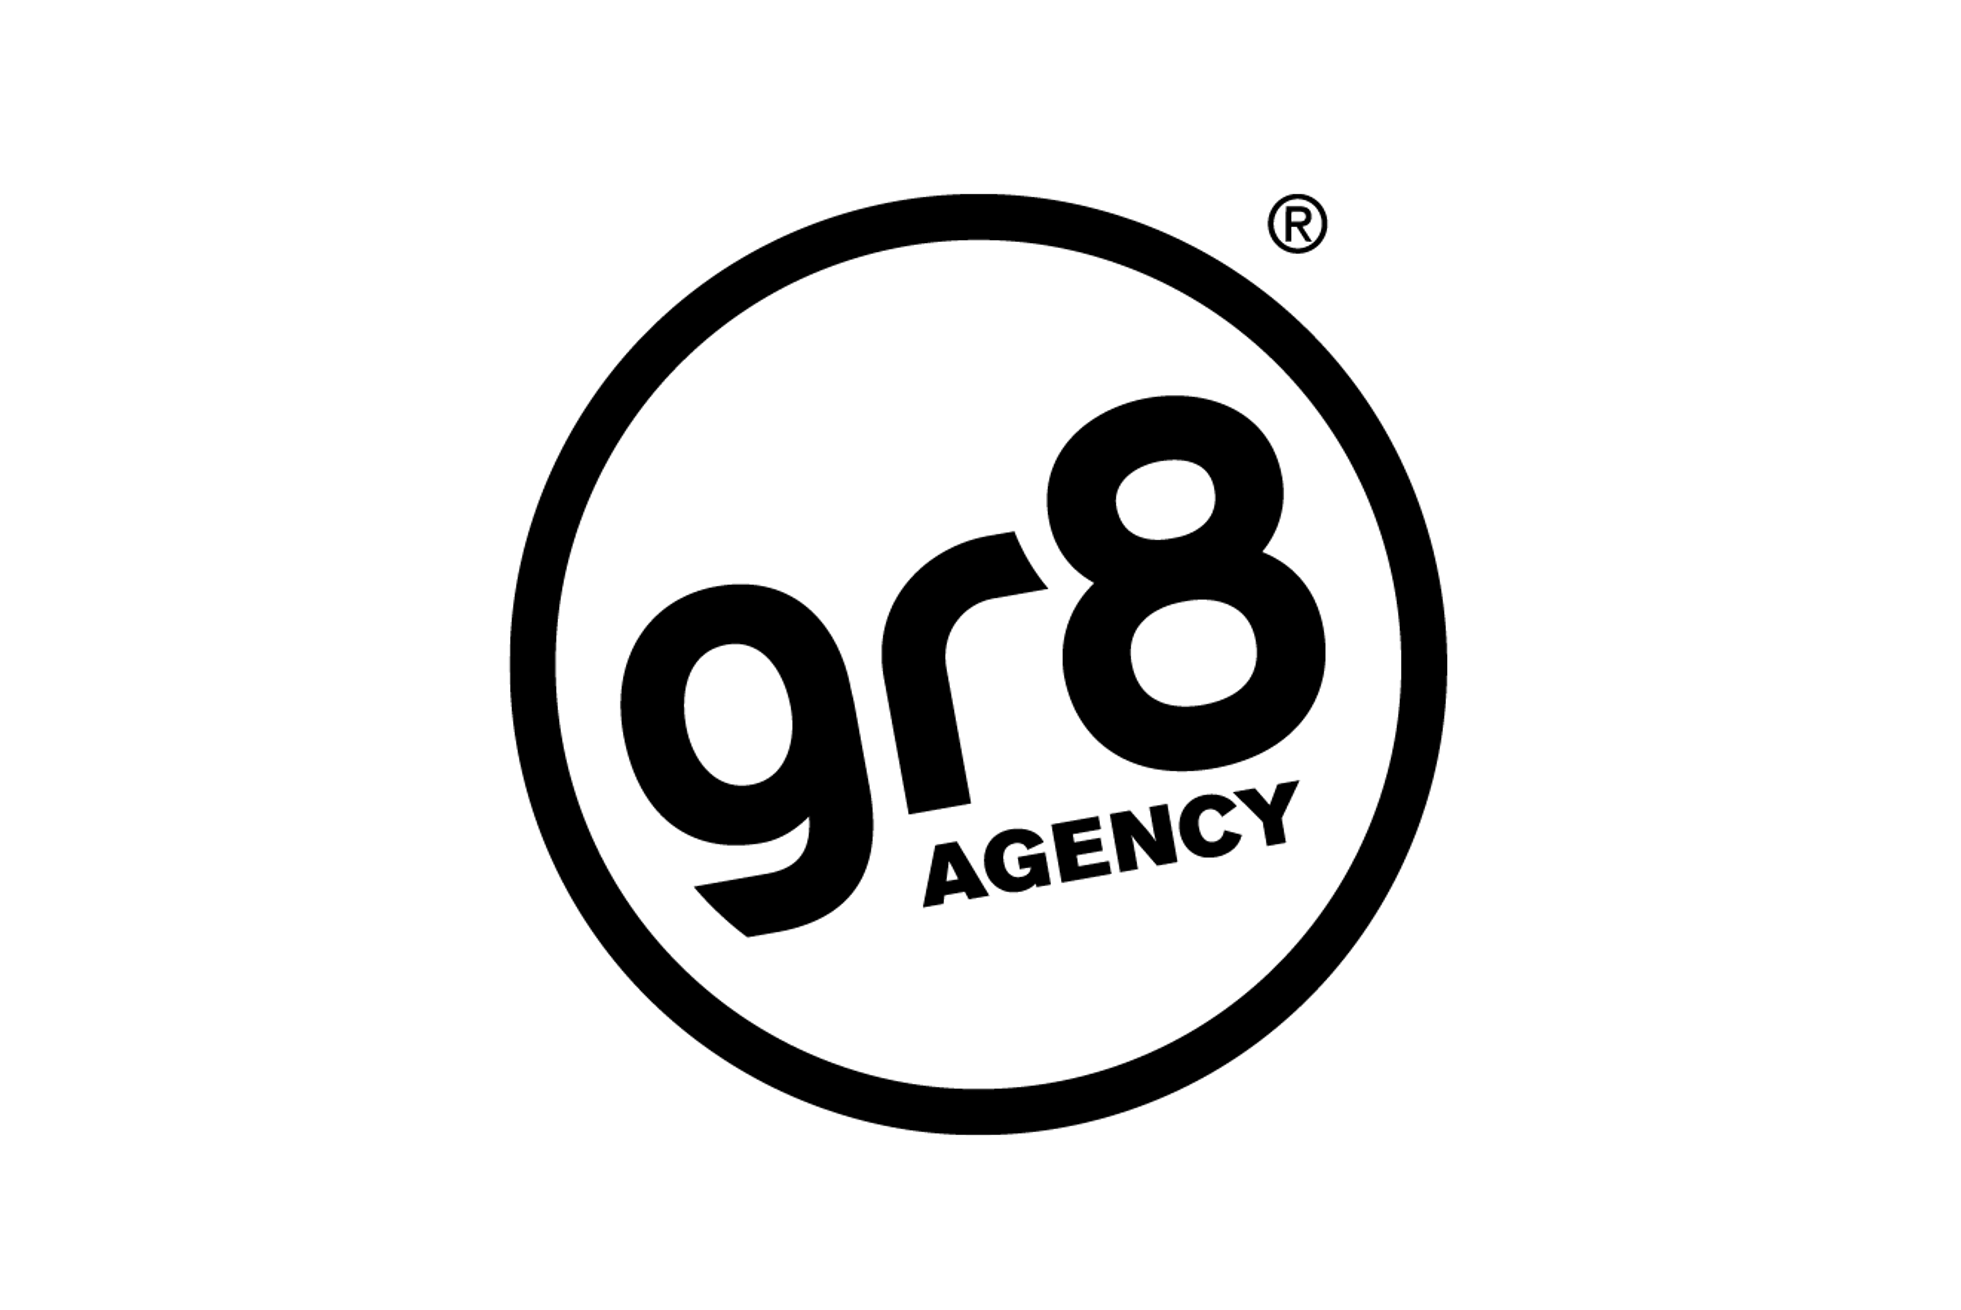 gr8 logo